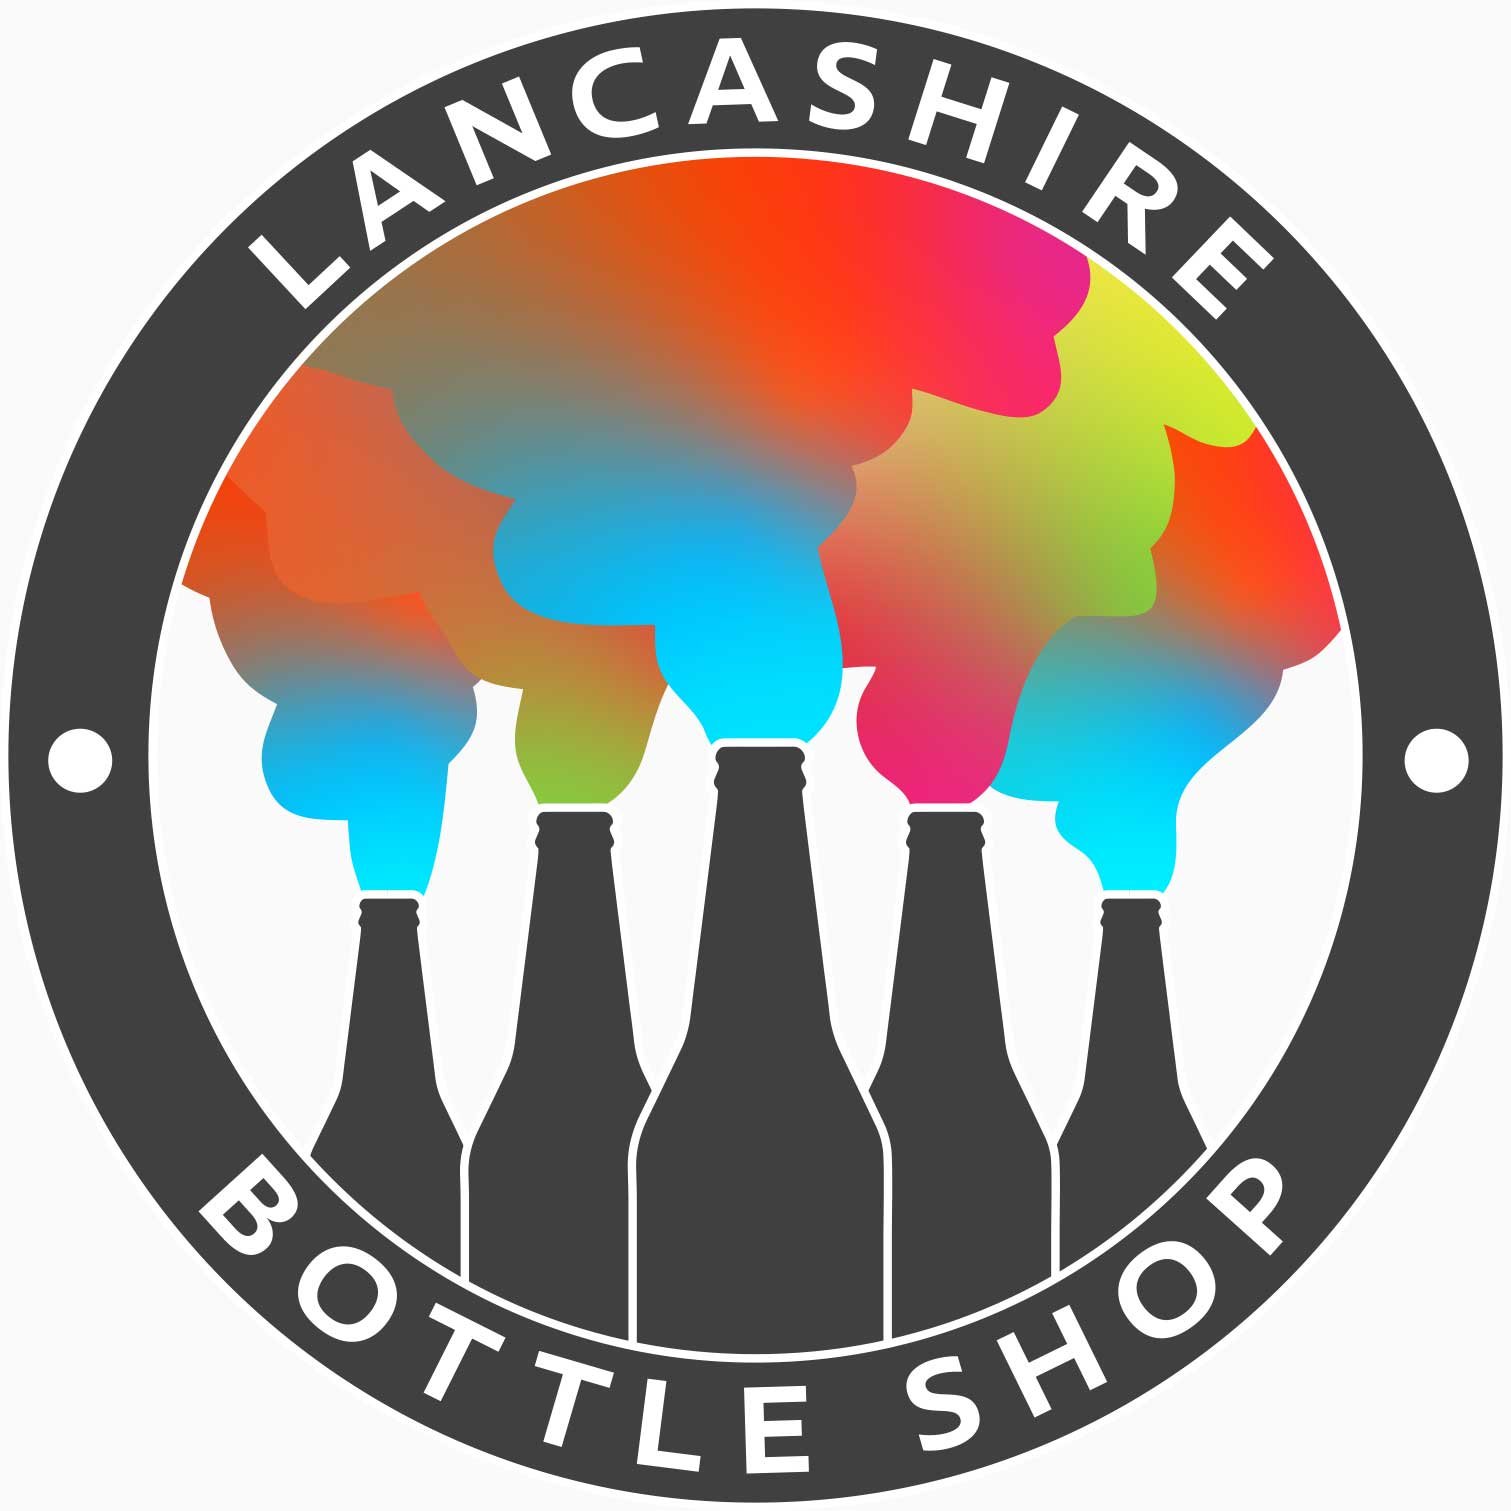 Lancashire Bottle Shop